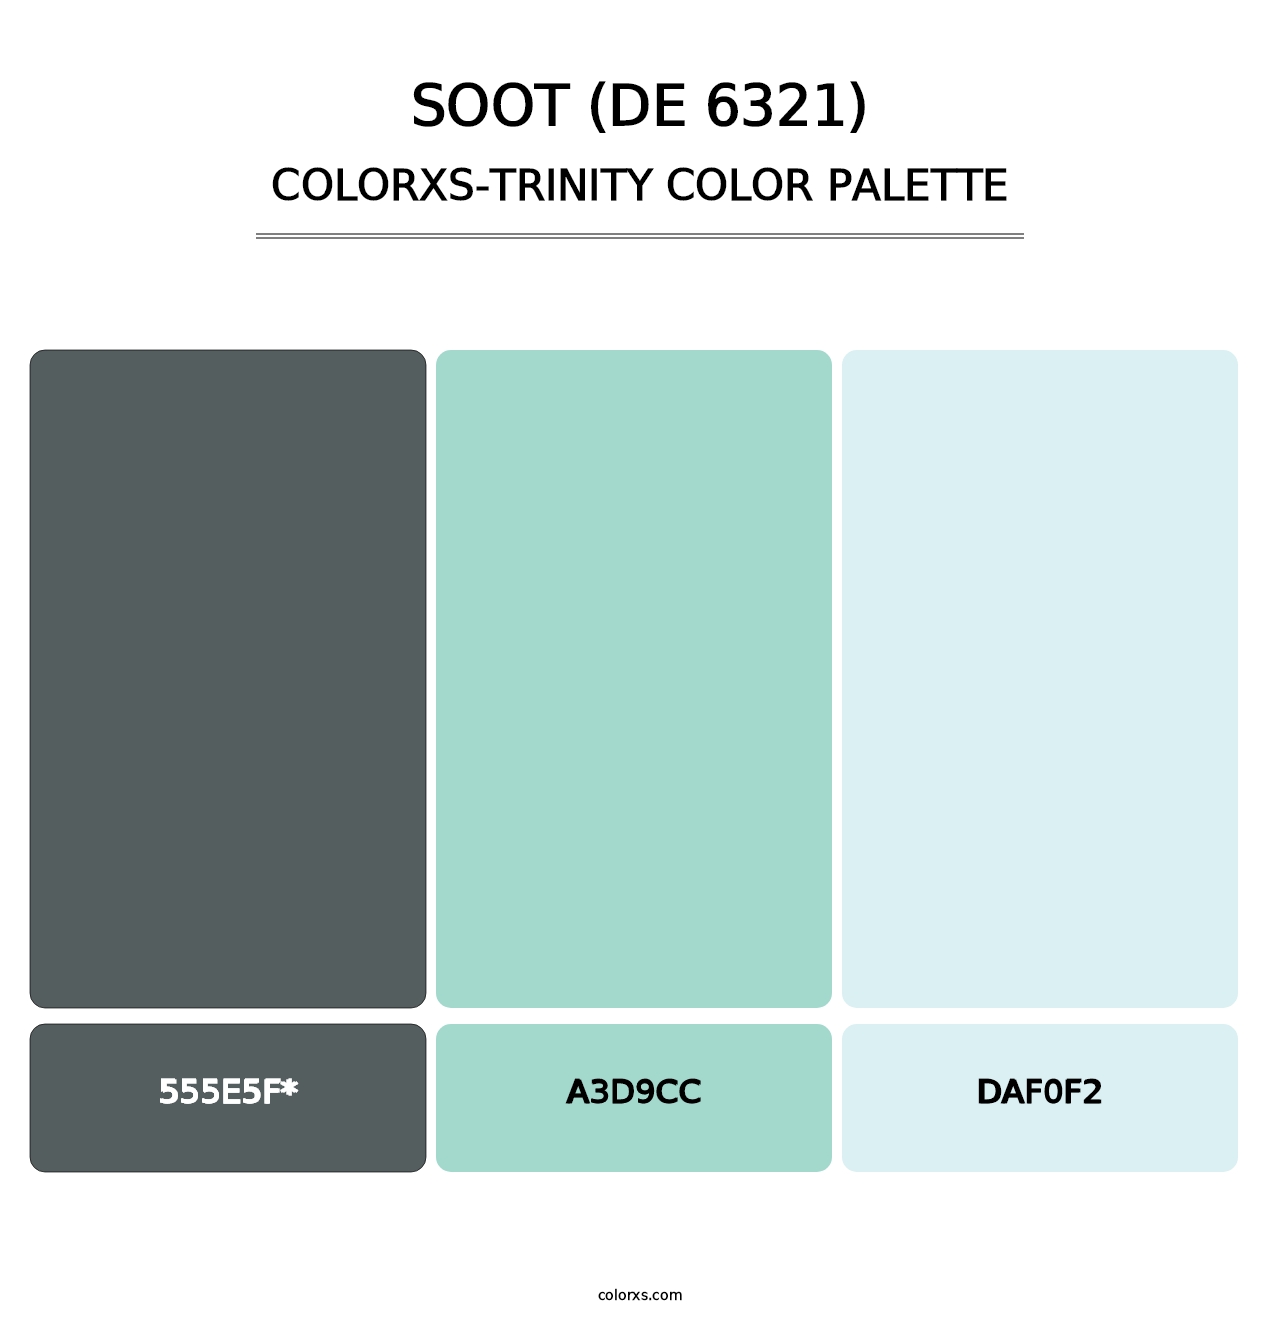 Soot (DE 6321) - Colorxs Trinity Palette